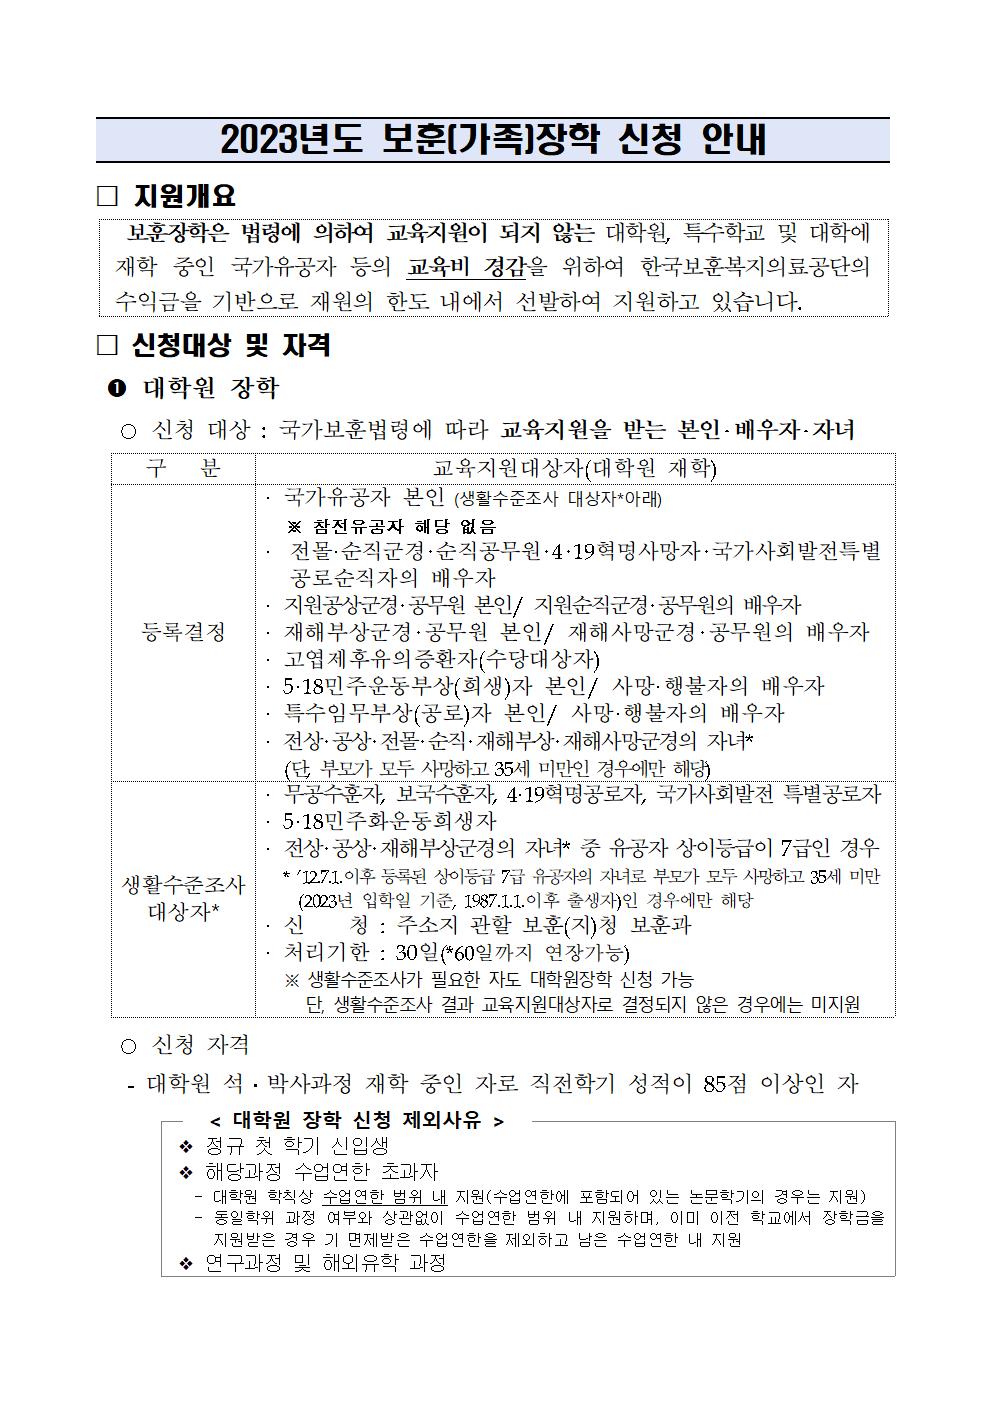 2023-1학기 보훈(가족) 장학 신청 안내